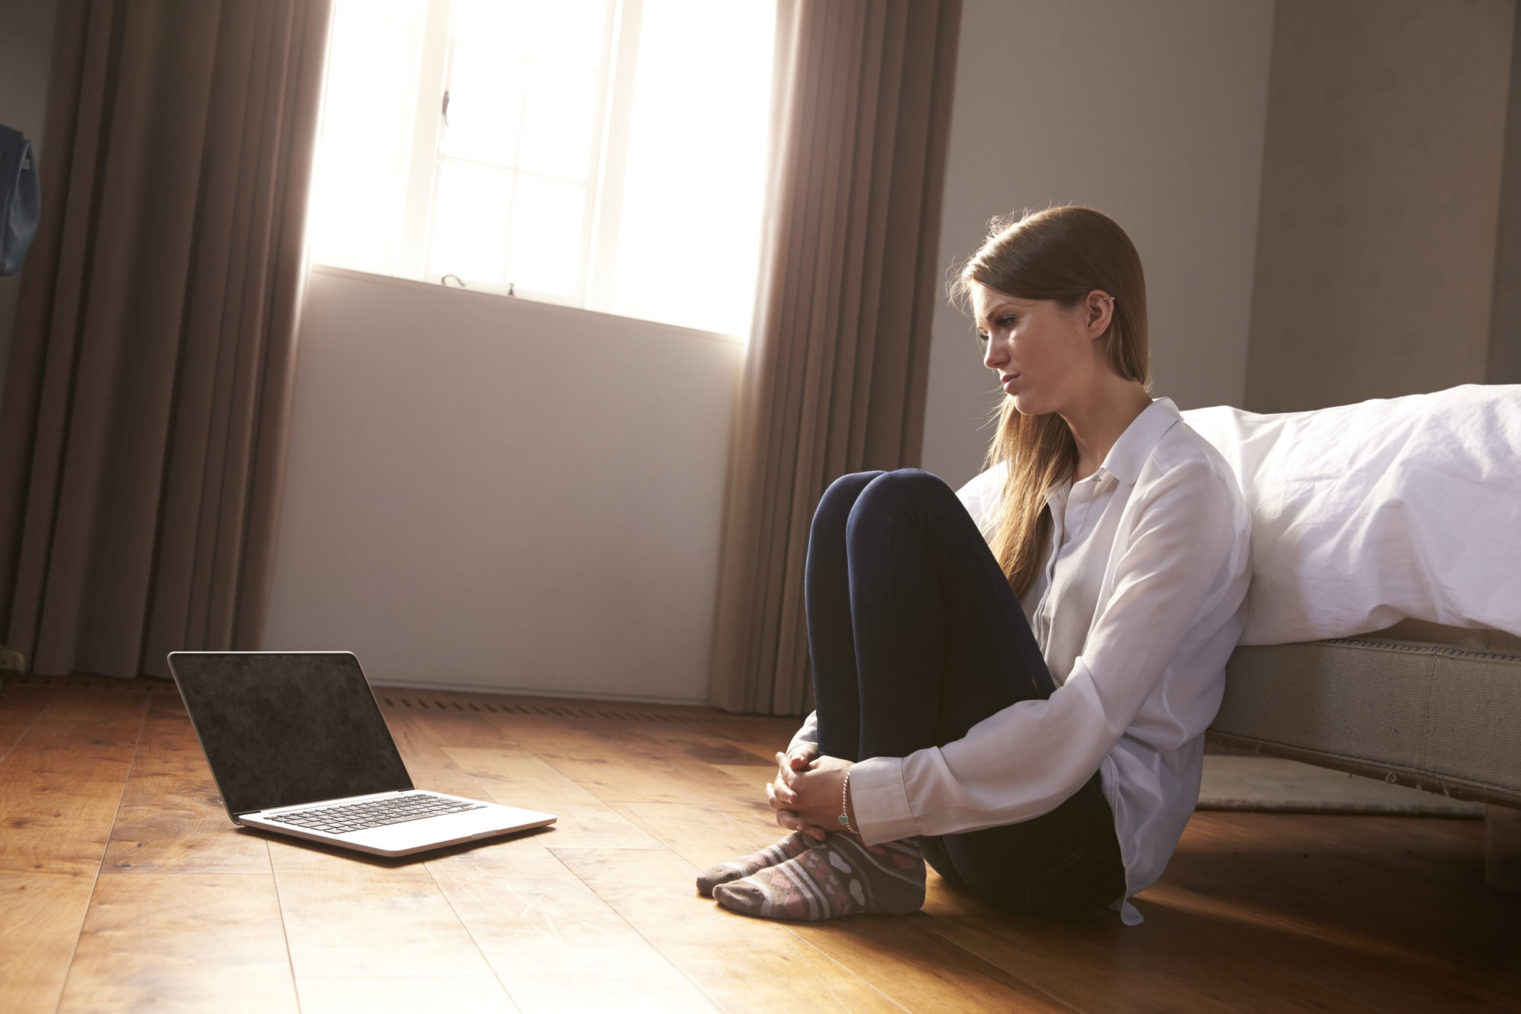 Illustrasjonsbilde av ung kvinne som sitter på gulvet og ser skremt mot en pc-skjerm.